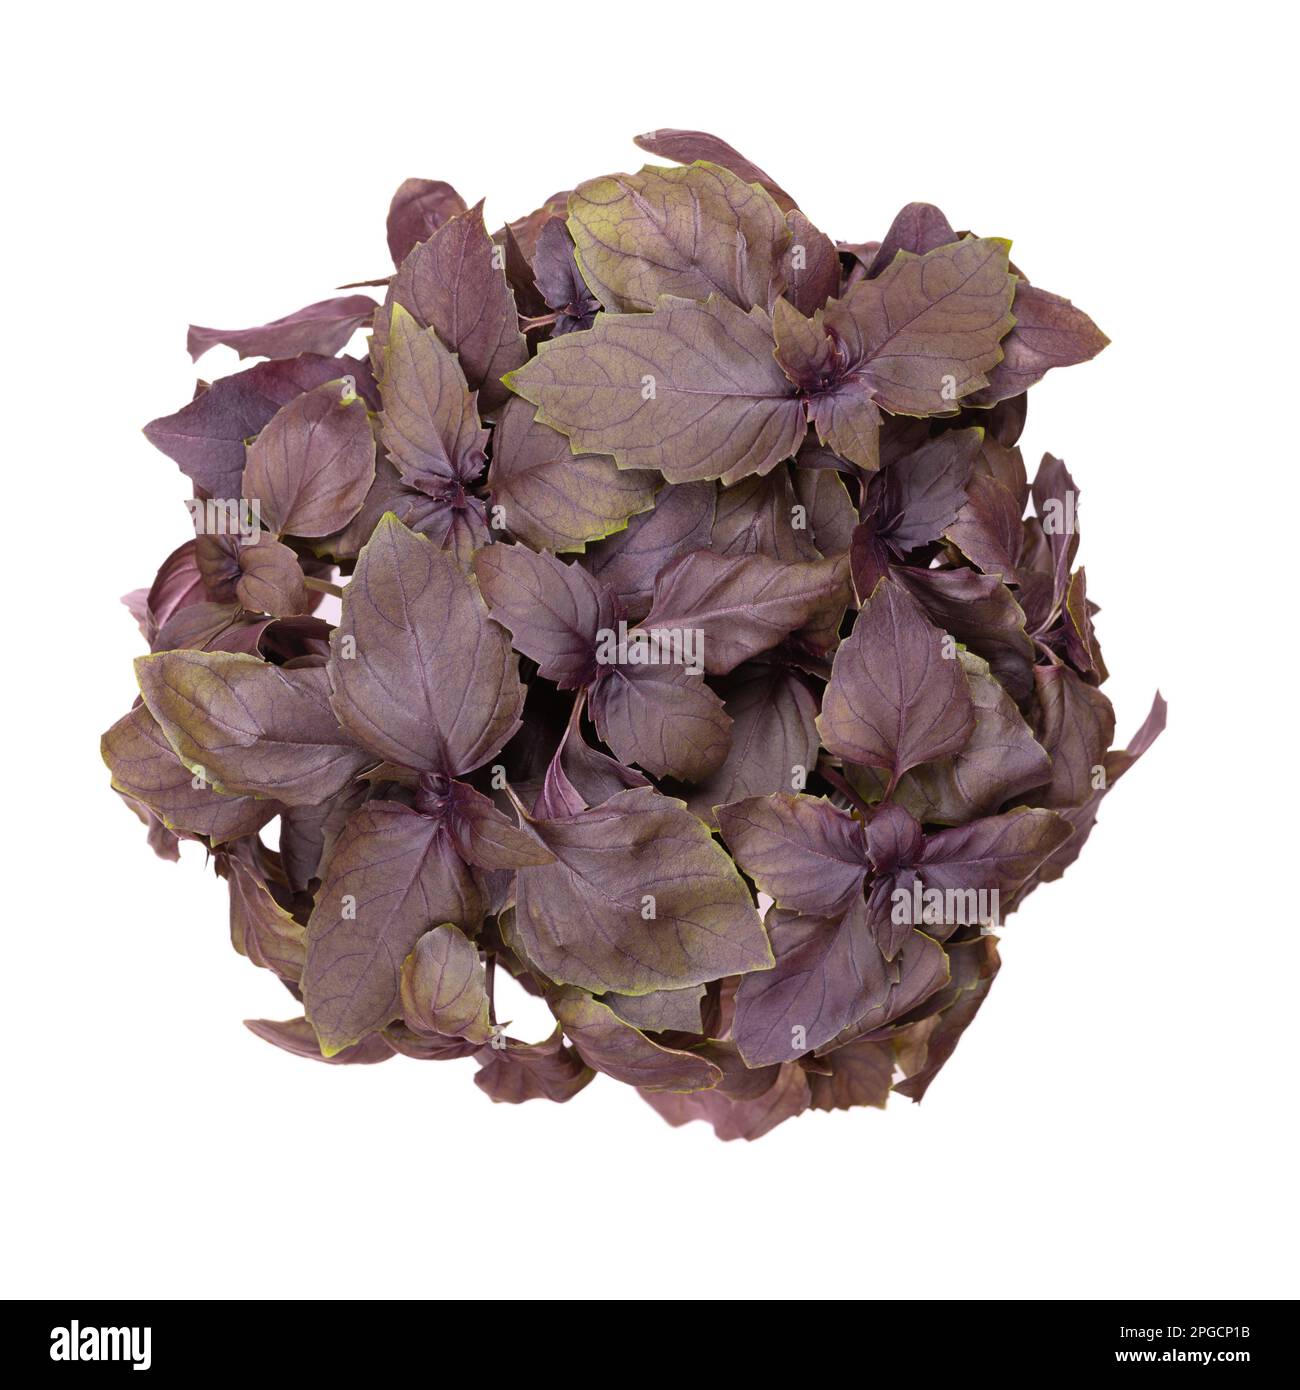 Albahaca rubin roja desde arriba, aislado sobre blanco. Ocimum basilicum purpurascens fresco, una variación de albahaca dulce, con hojas de color rojizo-púrpura inusuales. Foto de stock